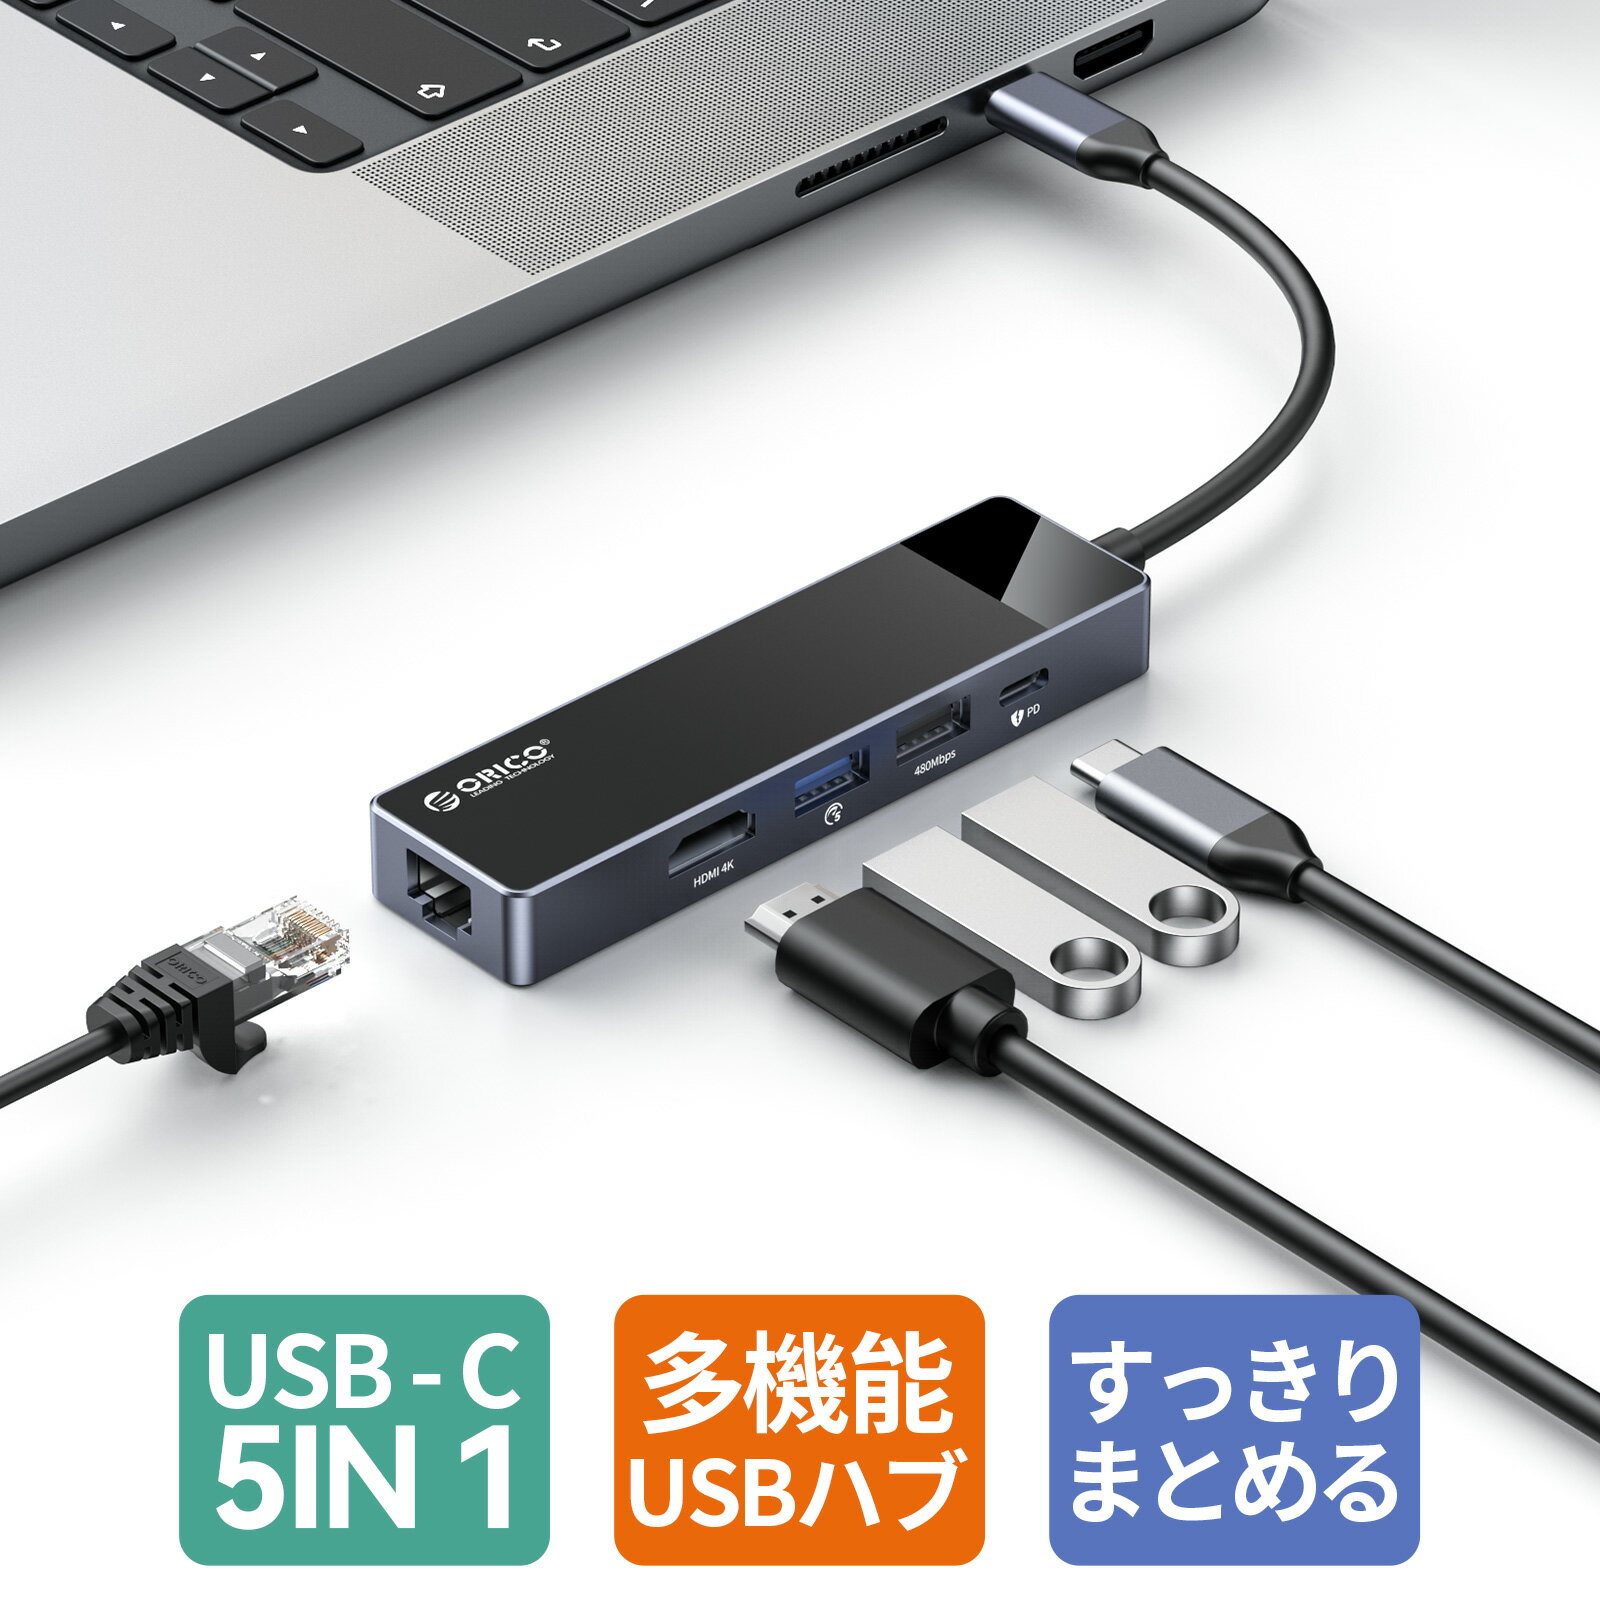 【あす楽】ORICO USB C ハブ 5-in-1 USB3.0 60WPD充電 4K@30Hz HDMI出力 LAN変換アダプ ドッキングステーション RJ45 イーサネット 5Gbpsデータ転送 セルフパワー/バスパワー両対応 Mac OS/Windows8/10/Android 対応